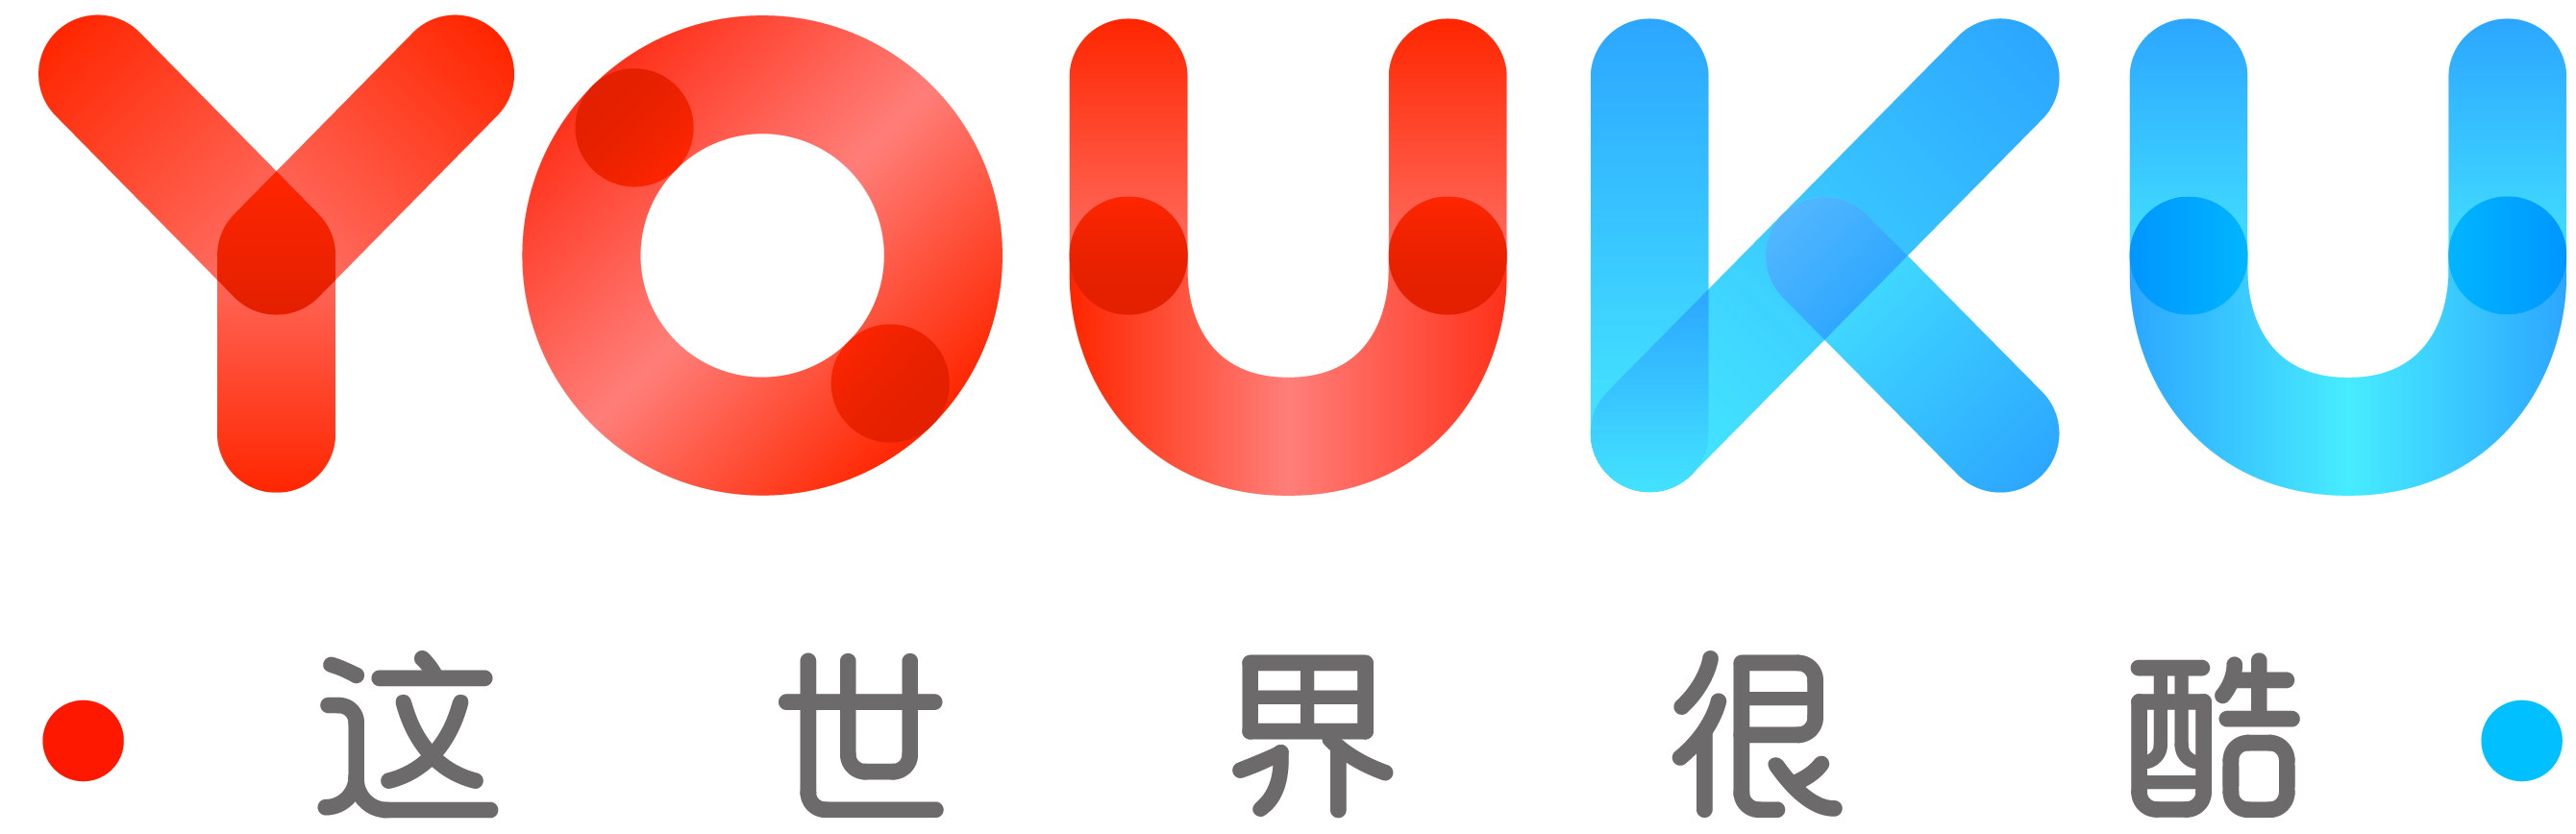 Youku logo vector .